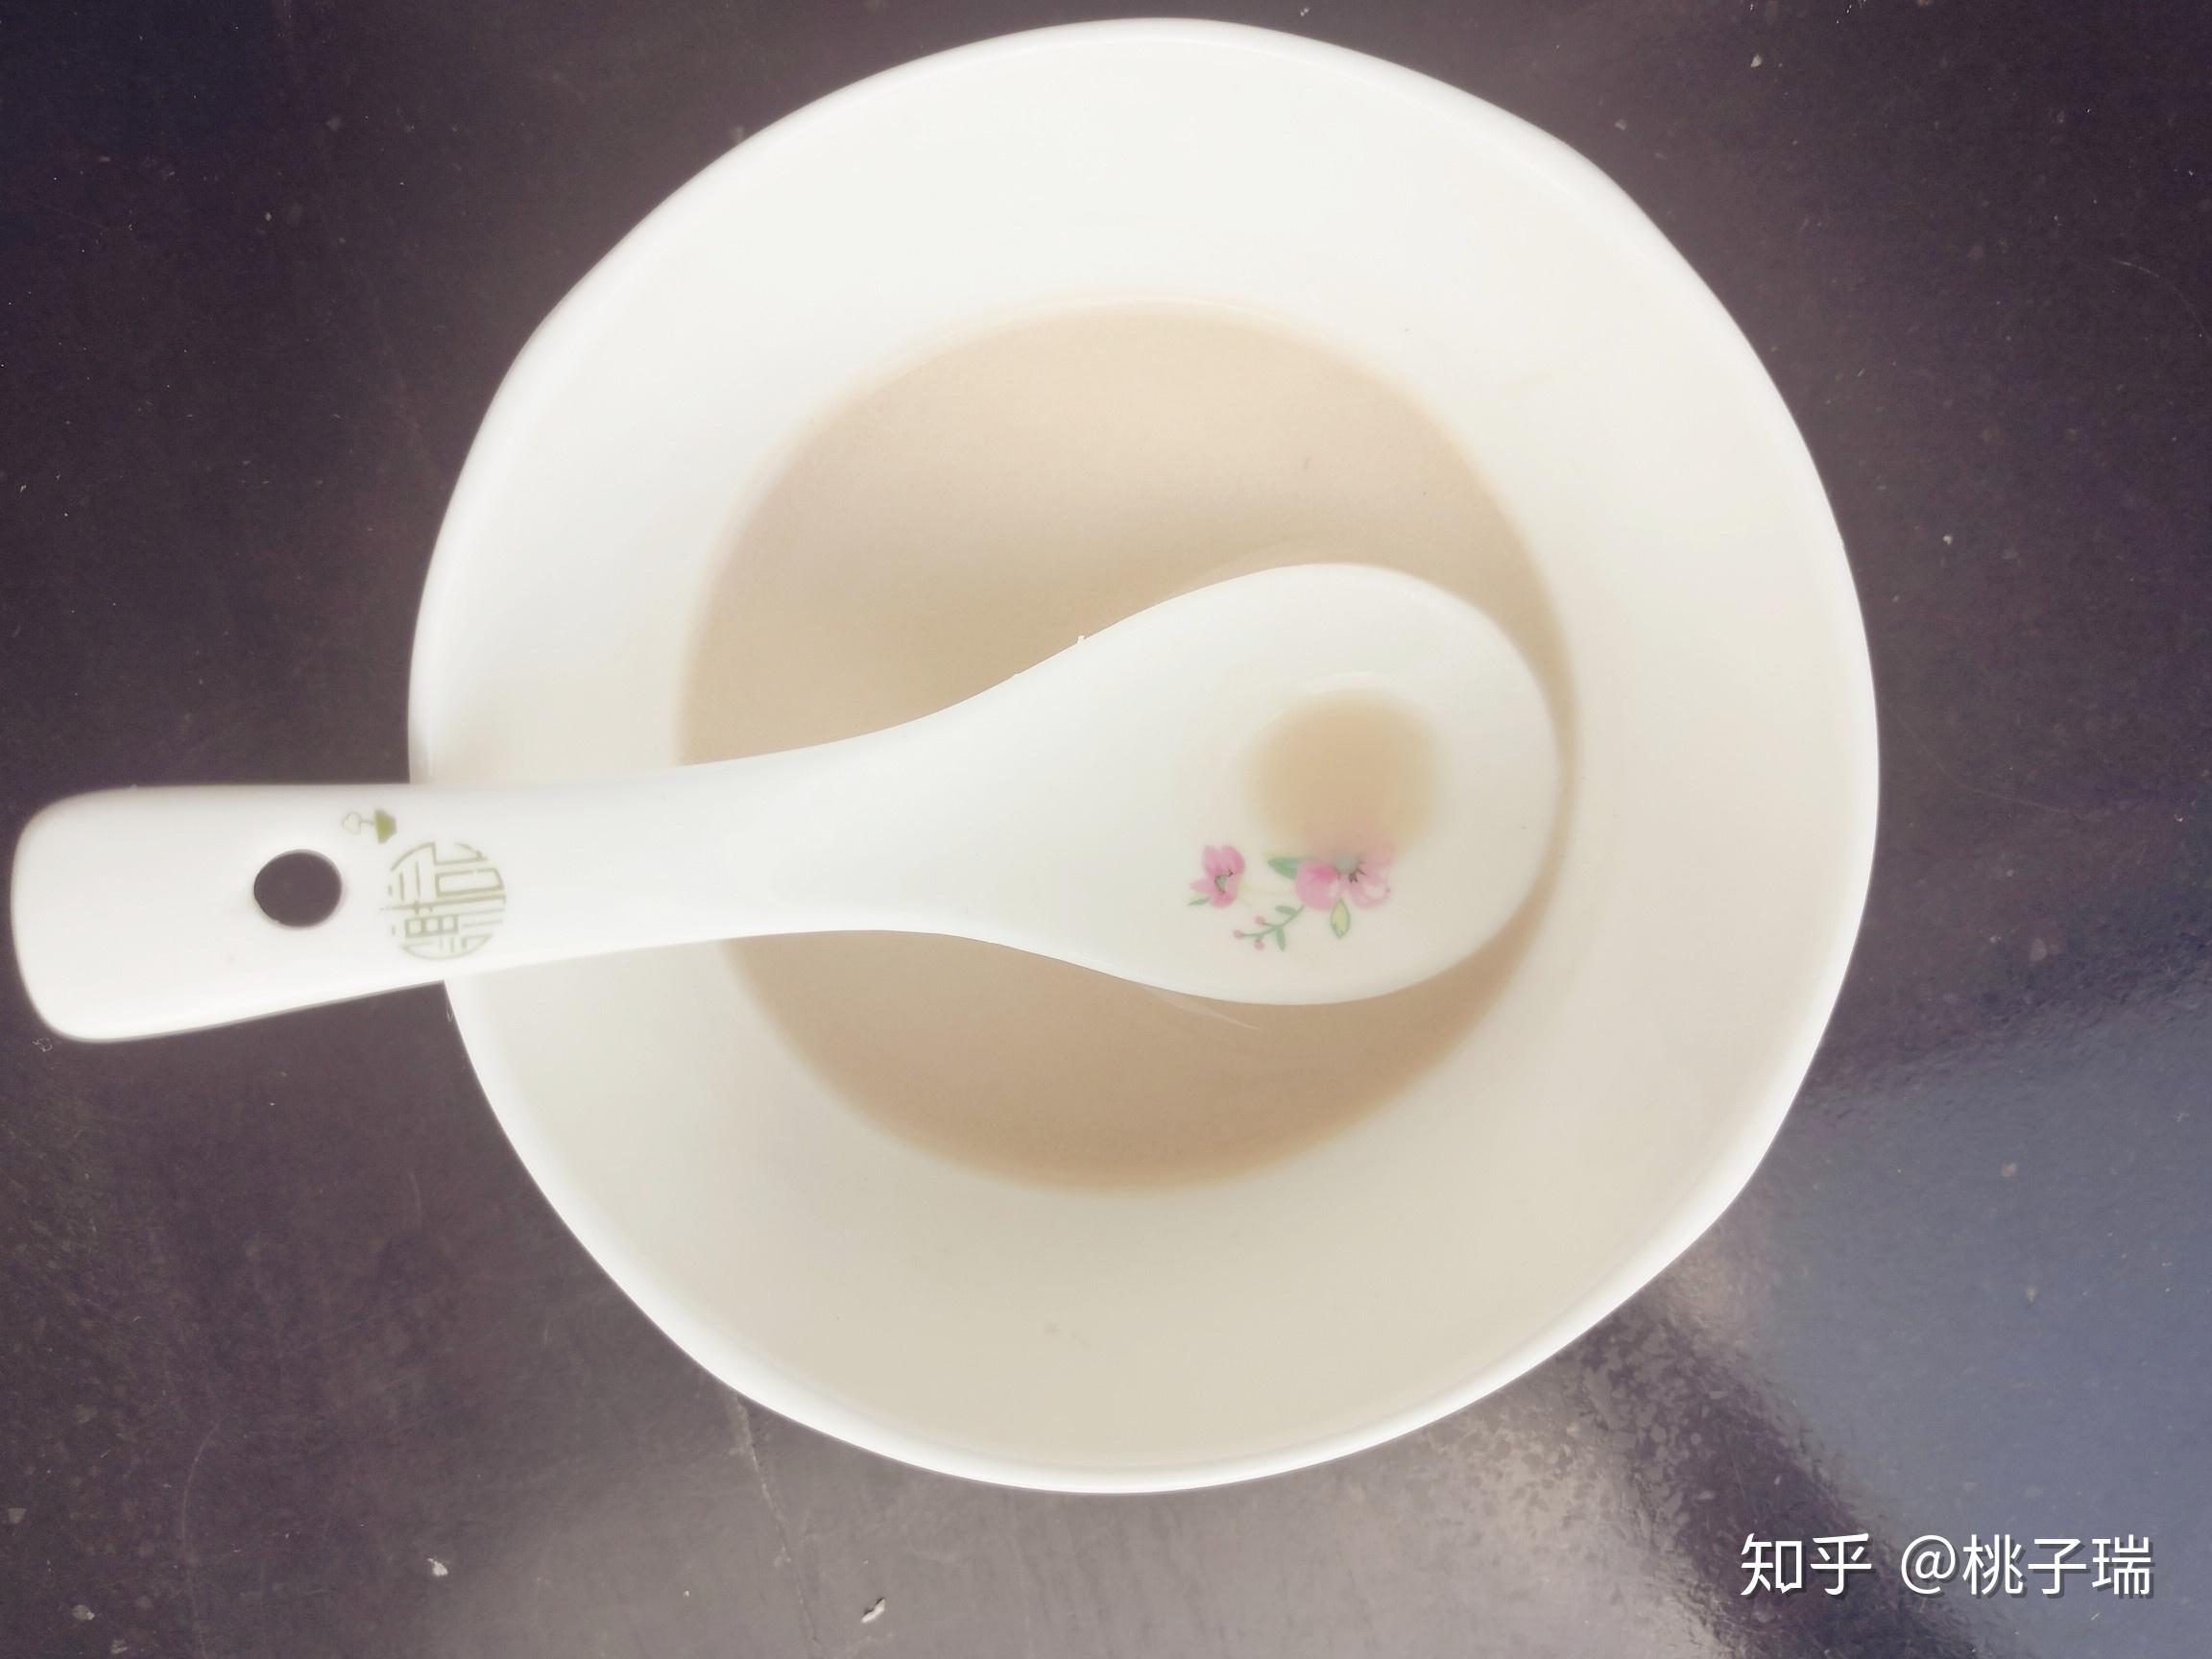 如何泡一碗完美藕粉/清晰版本 - 哔哩哔哩